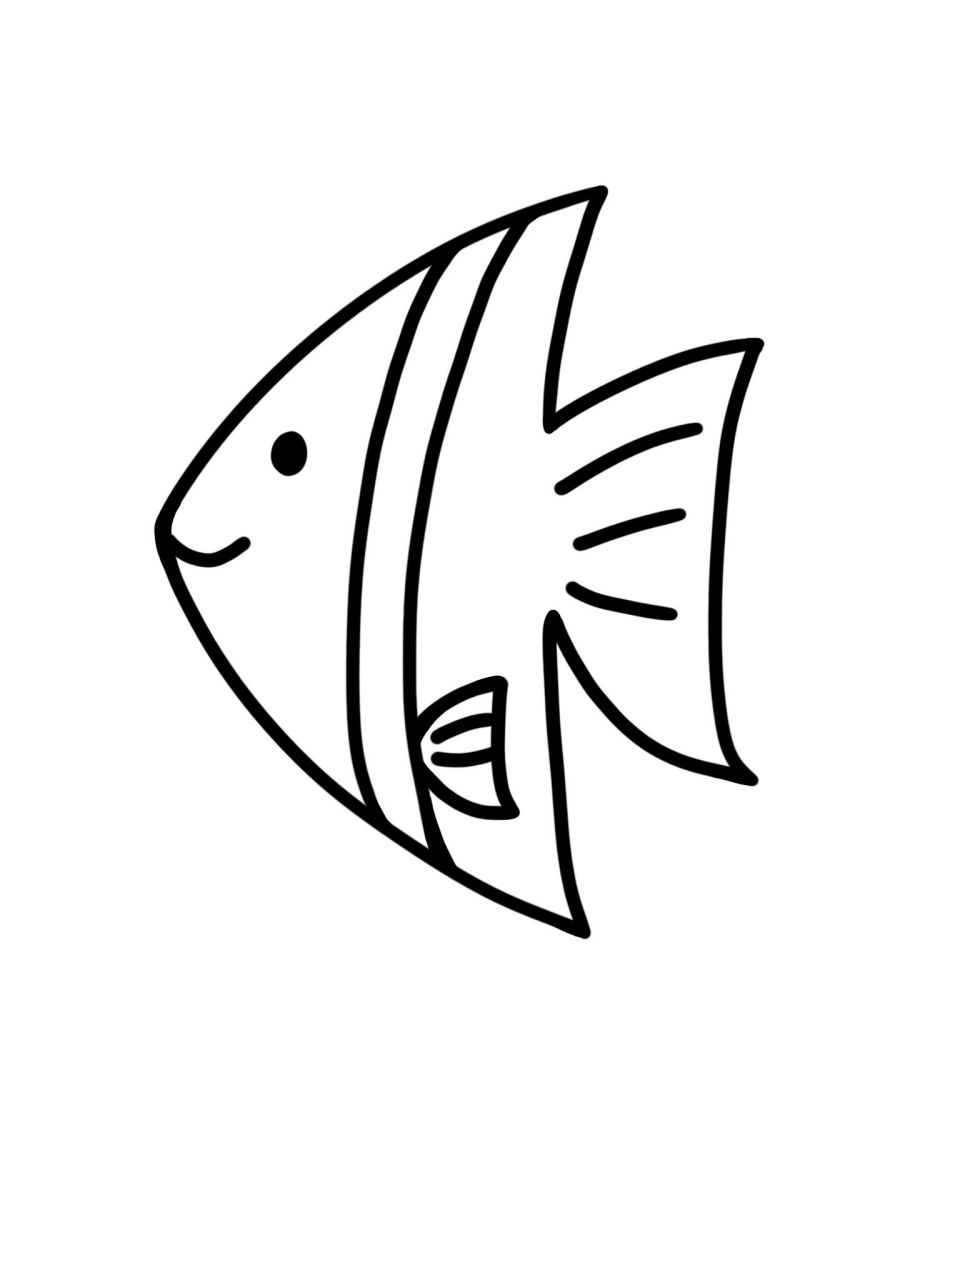 热带鱼简笔画可爱图片